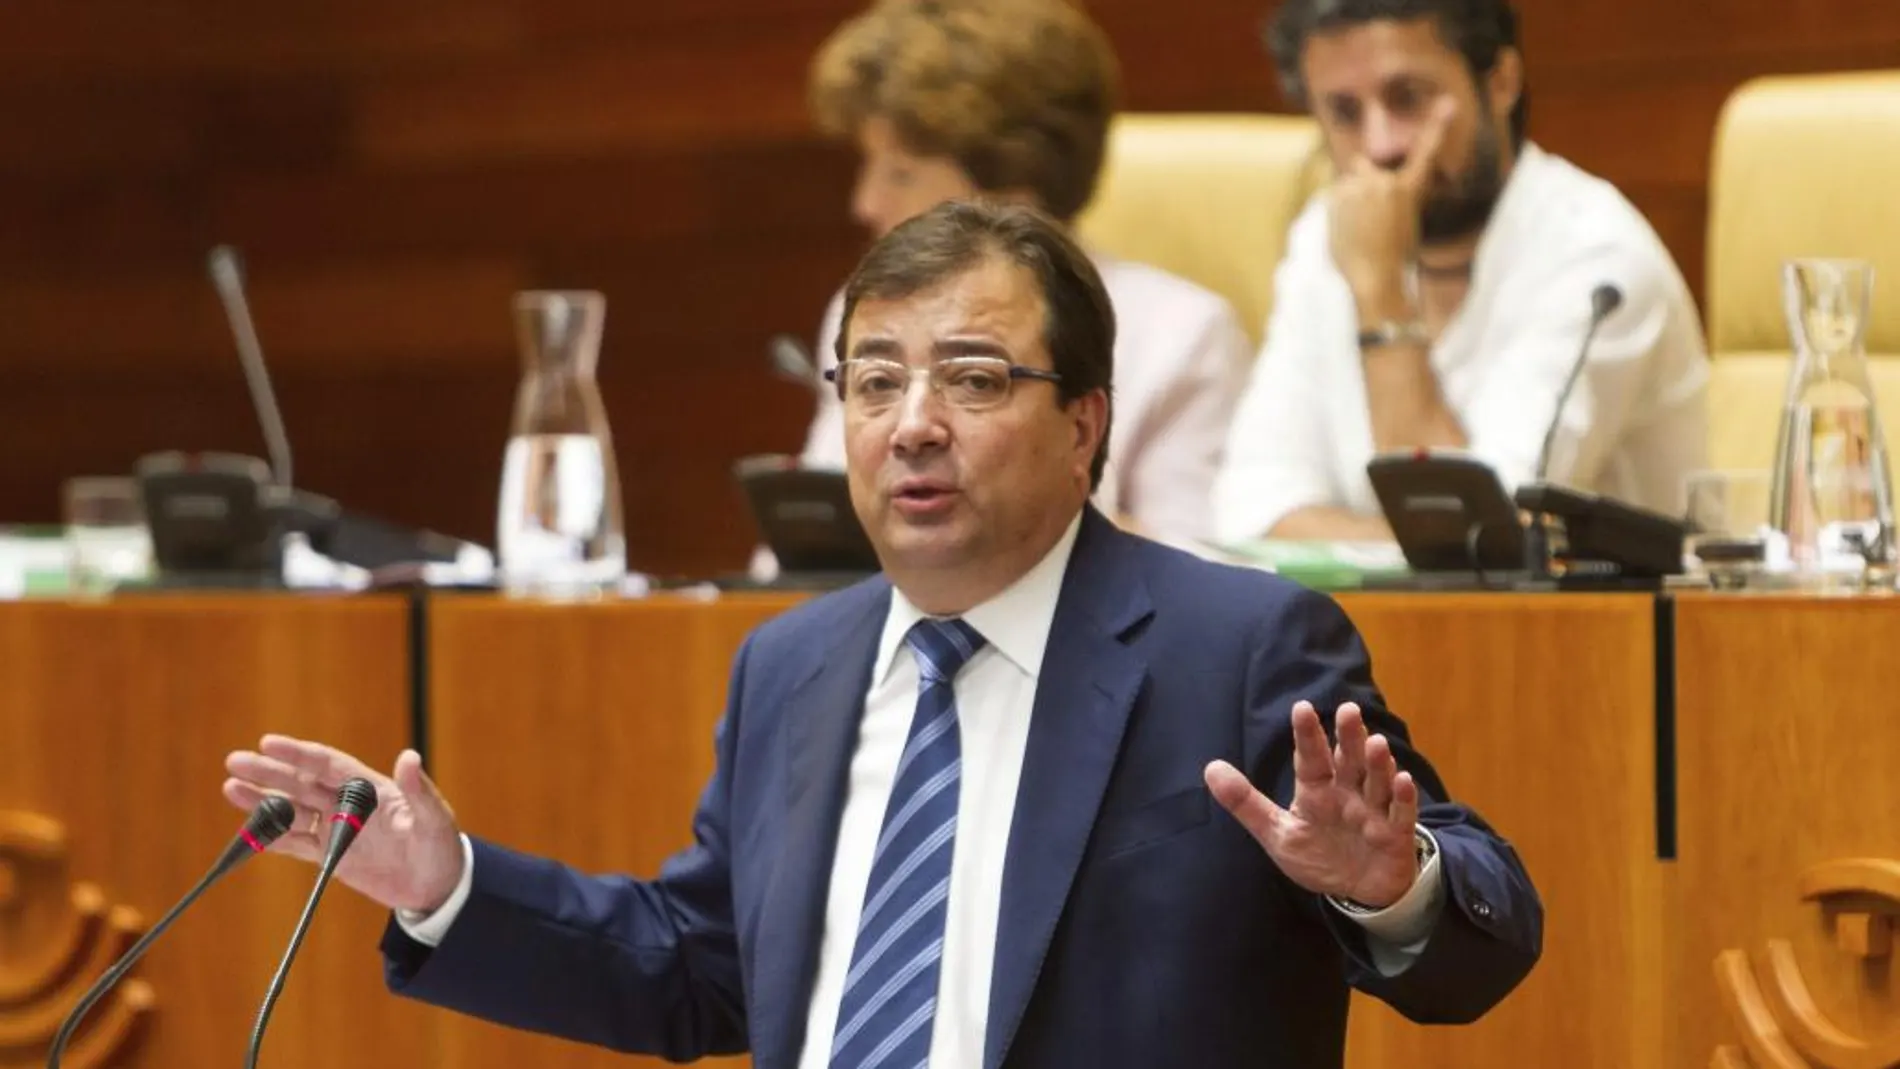 Guillermo Fernández Vara, durante su intervención en el pleno en el que será investido presidente de la Junta de Extremadura.